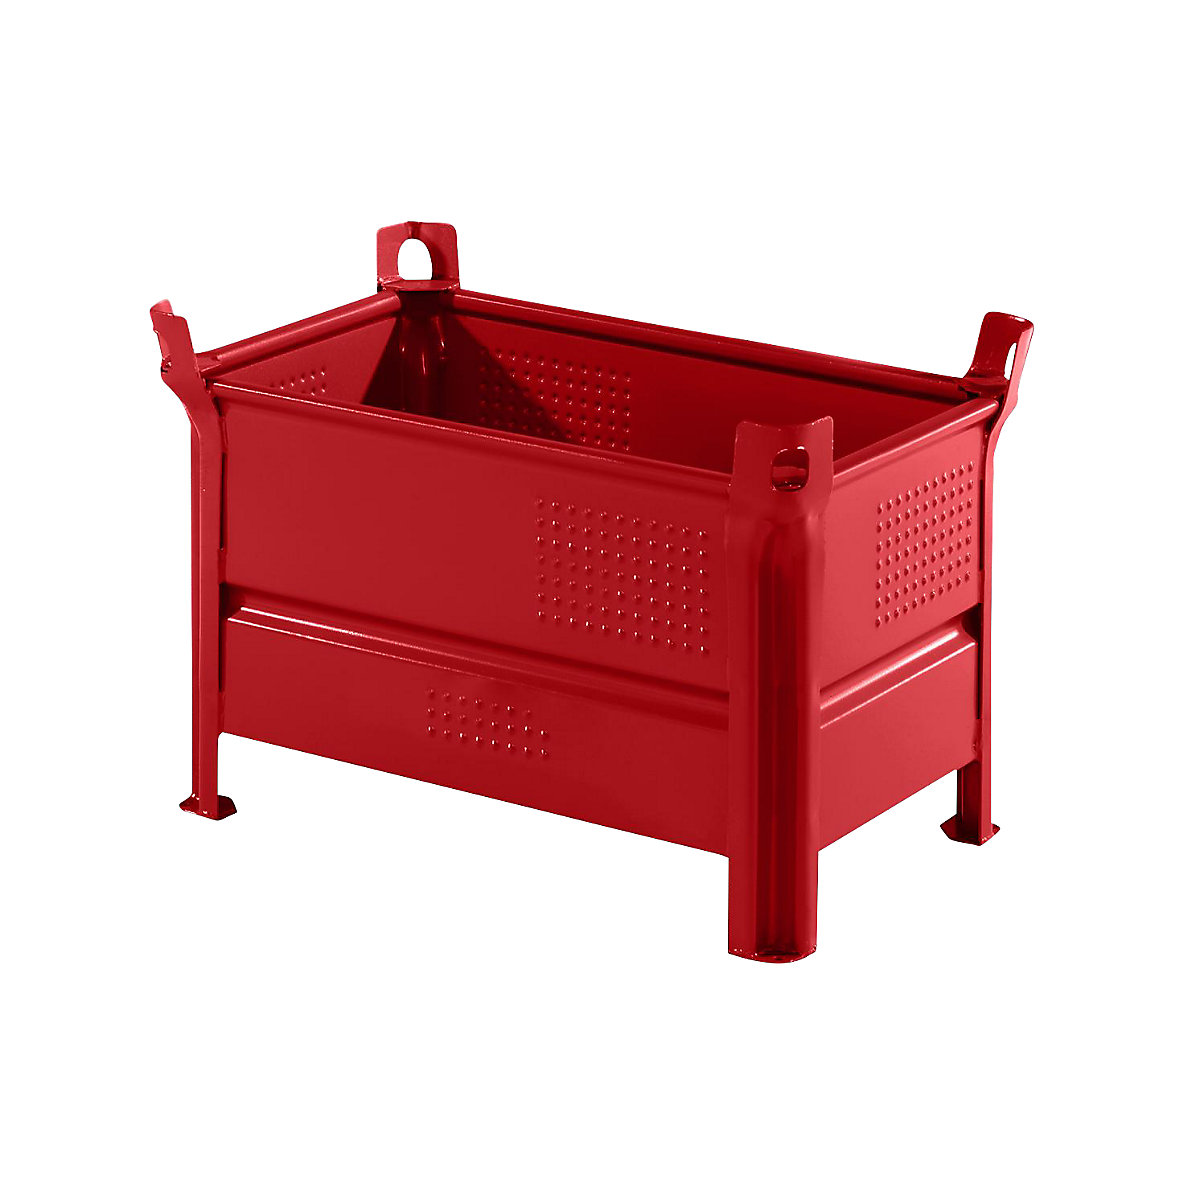 Pojemnik do ustawiania w stos z pełnymi ściankami – Heson, szer. x dł. 500 x 800 mm, nośność 1000 kg, czerwony, od 1 szt.-8